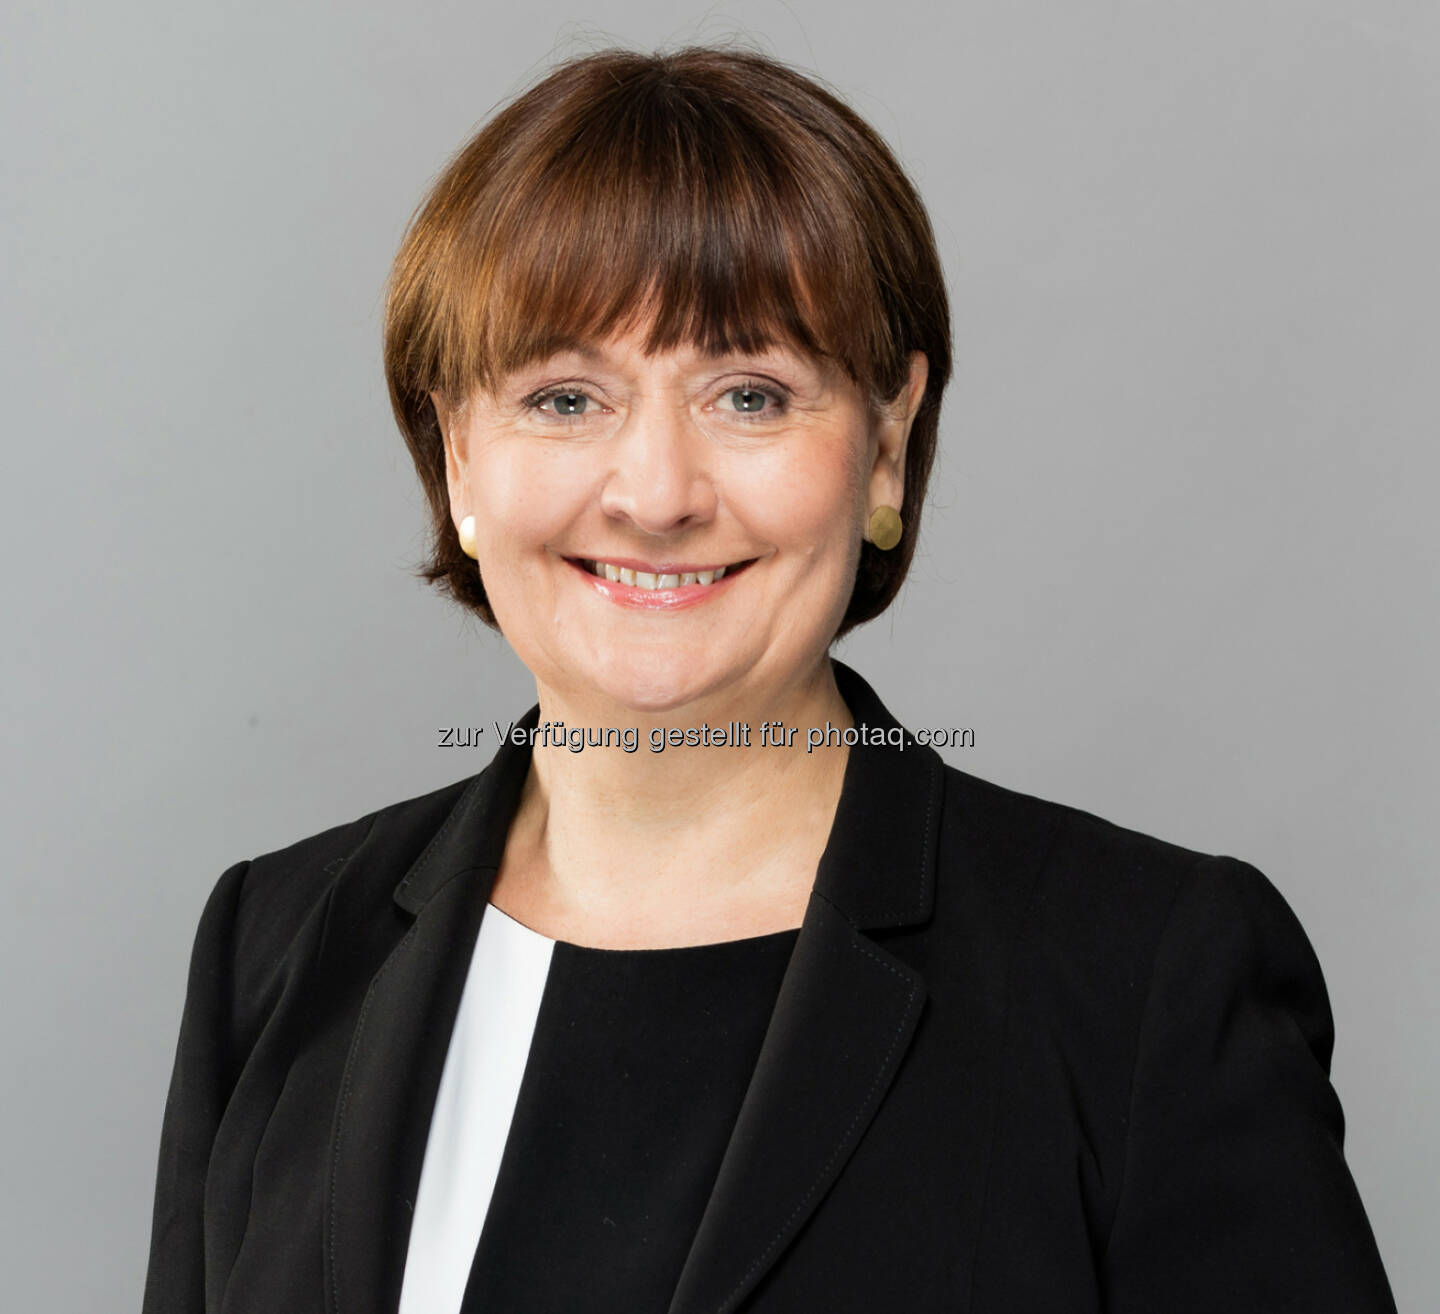 Herta Stockbauer, Vorstandsvorsitzende des BKS Bank-Konzern (Fotocredit: Gernot Gleiss)